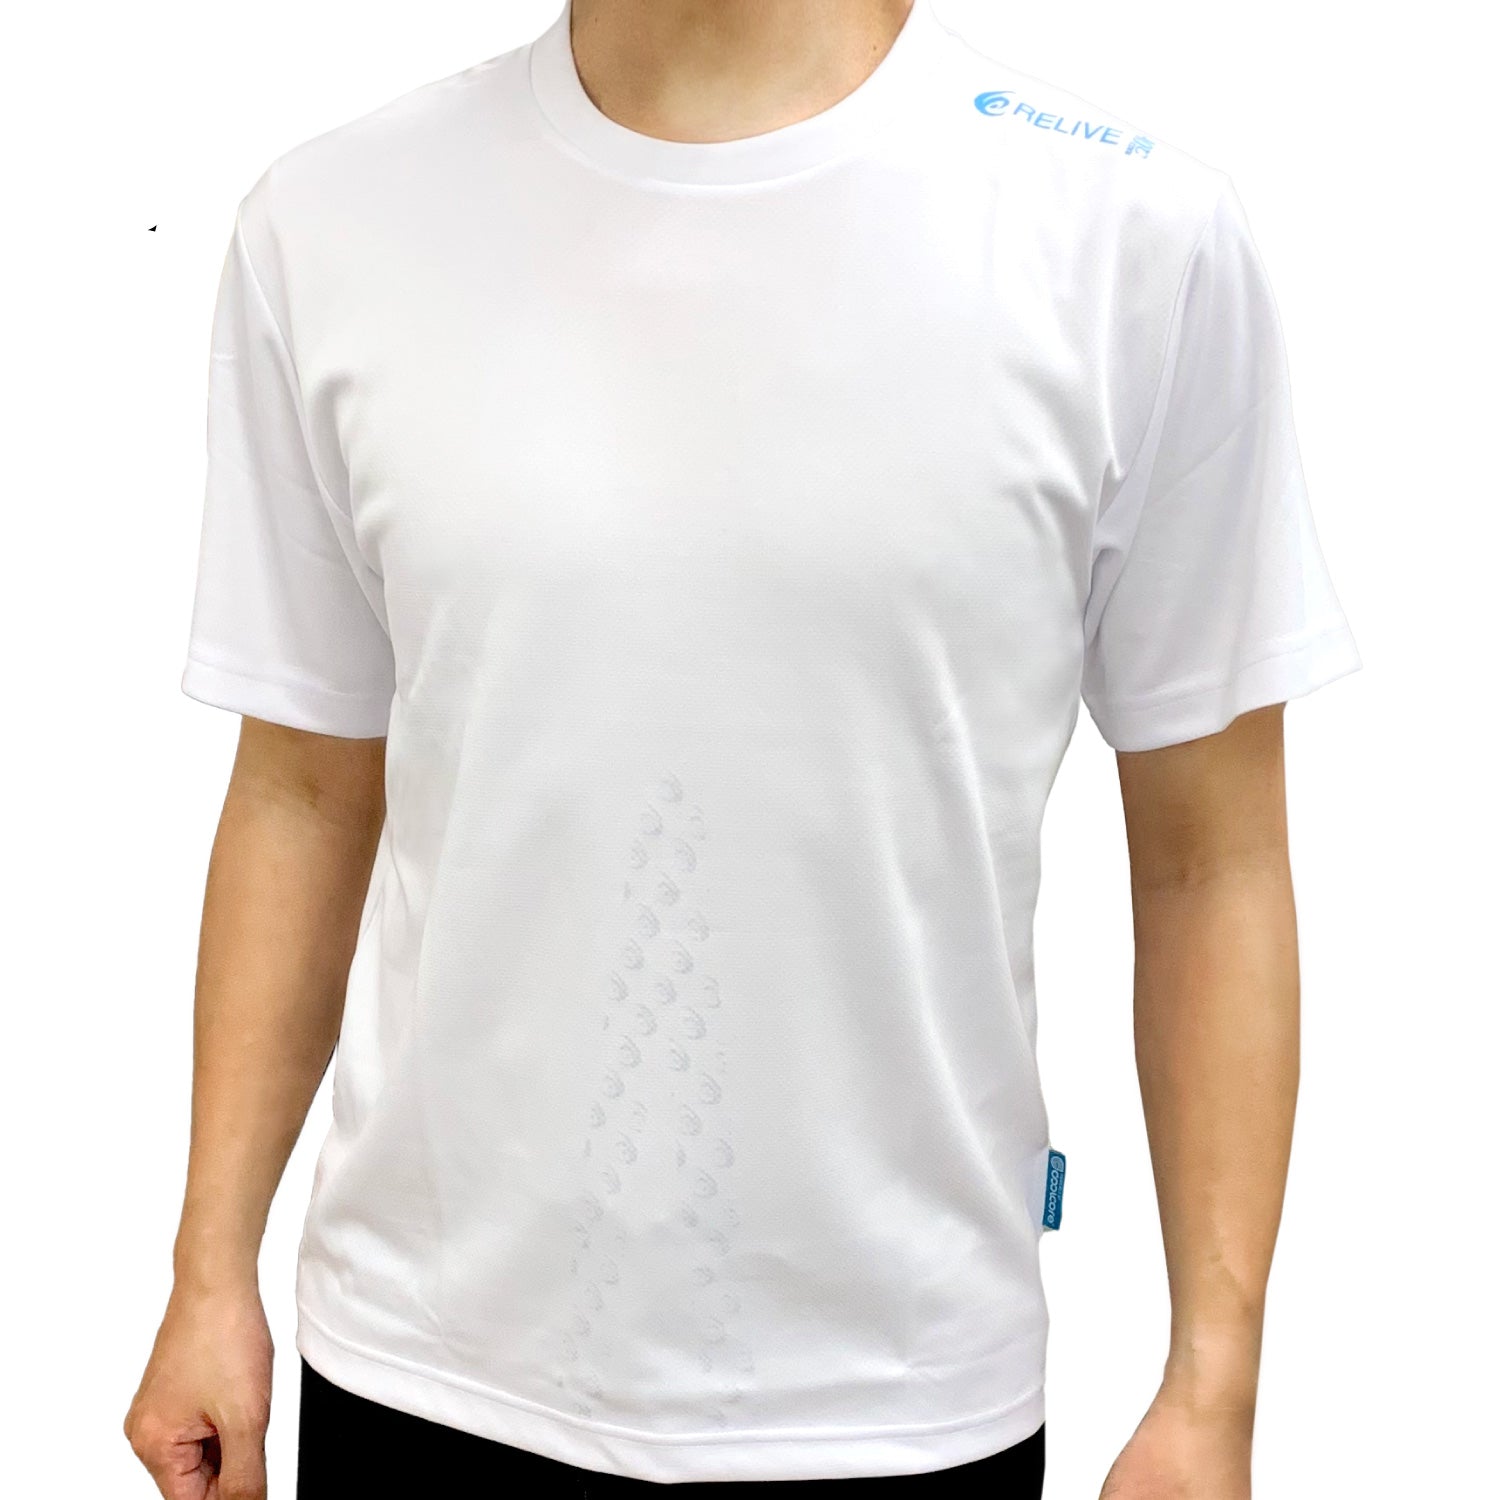 リライブシャツ 令和の虎 身体能力を向上させる半袖Tシャツ - Tシャツ ...